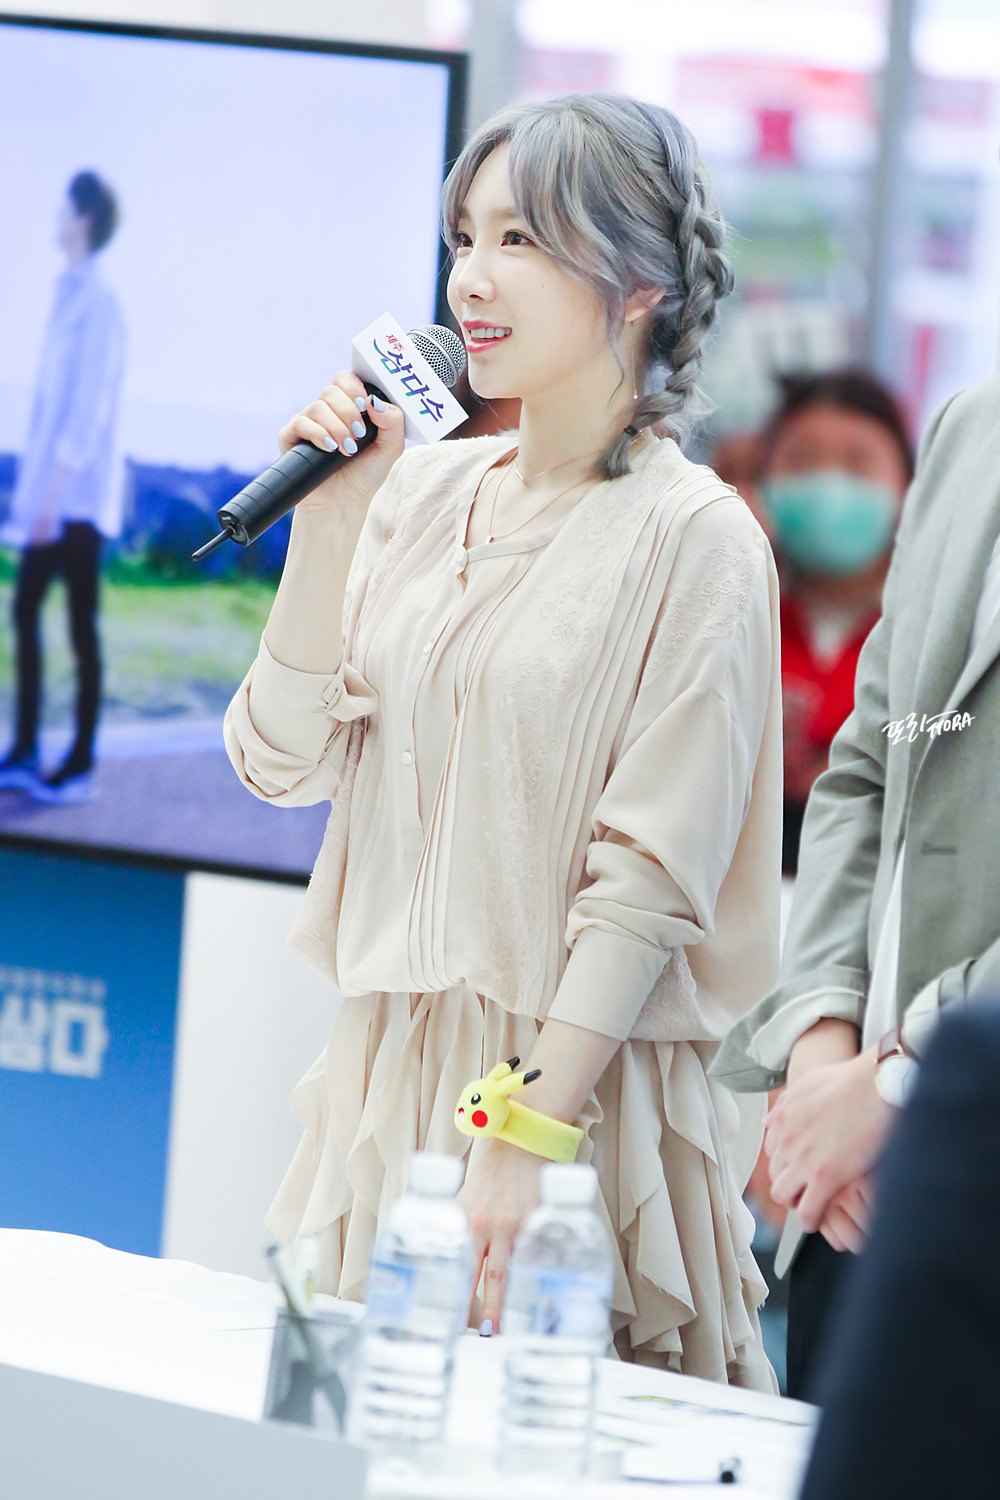 [PIC][23-09-2016]TaeYeon tham dự buổi Fansign cho thương hiệu nước uống "SAMDASOO" tại COEX Live Plaza vào tối nay - Page 11 224D244358E25DCD2BAA8B